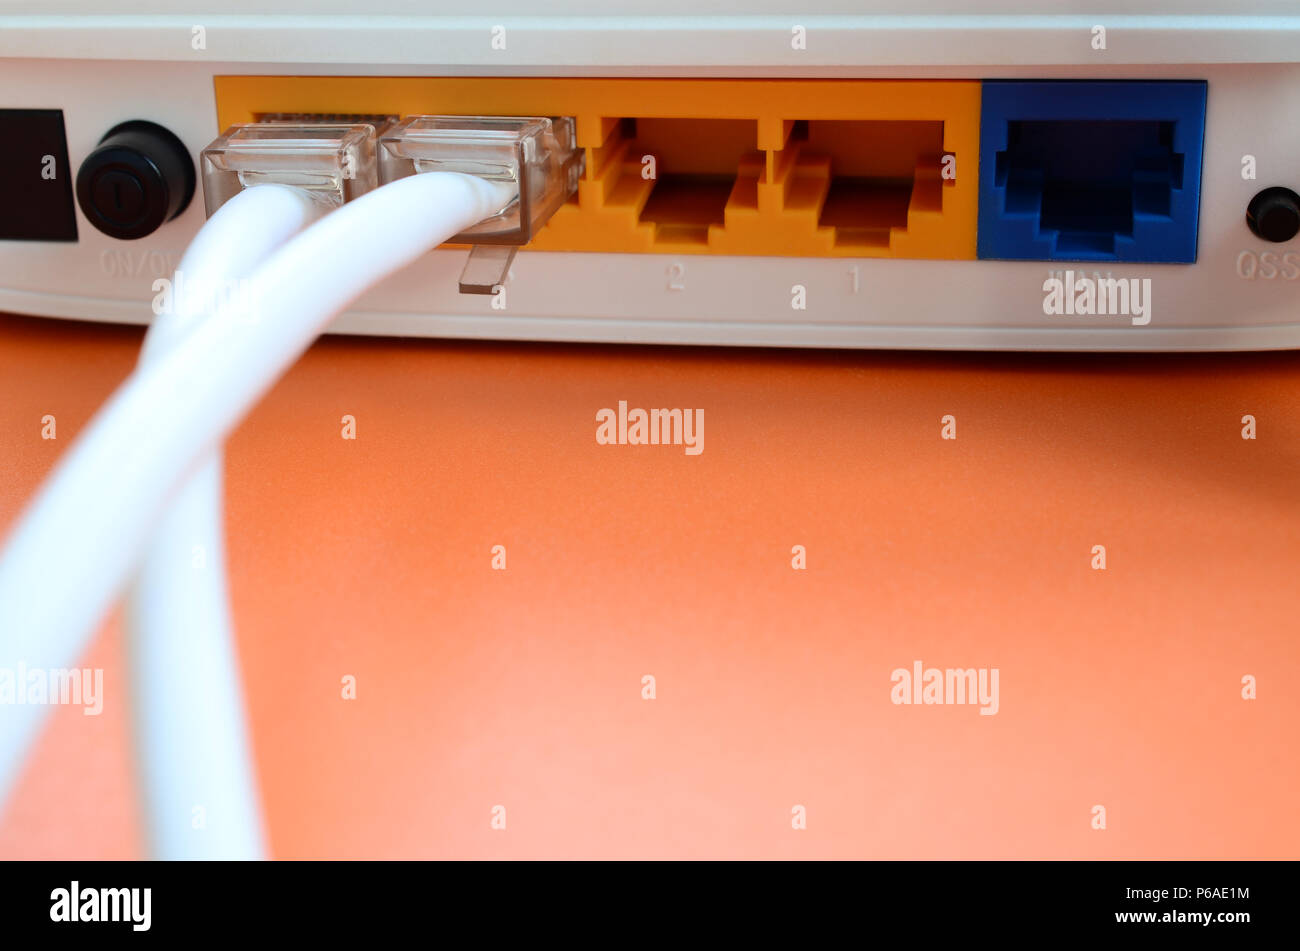 Das Internet Kabel Stecker sind mit dem Internet Router, der für ein helles  orange Hintergrund verbunden. Elemente für Internetverbindung erforderlich  Stockfotografie - Alamy